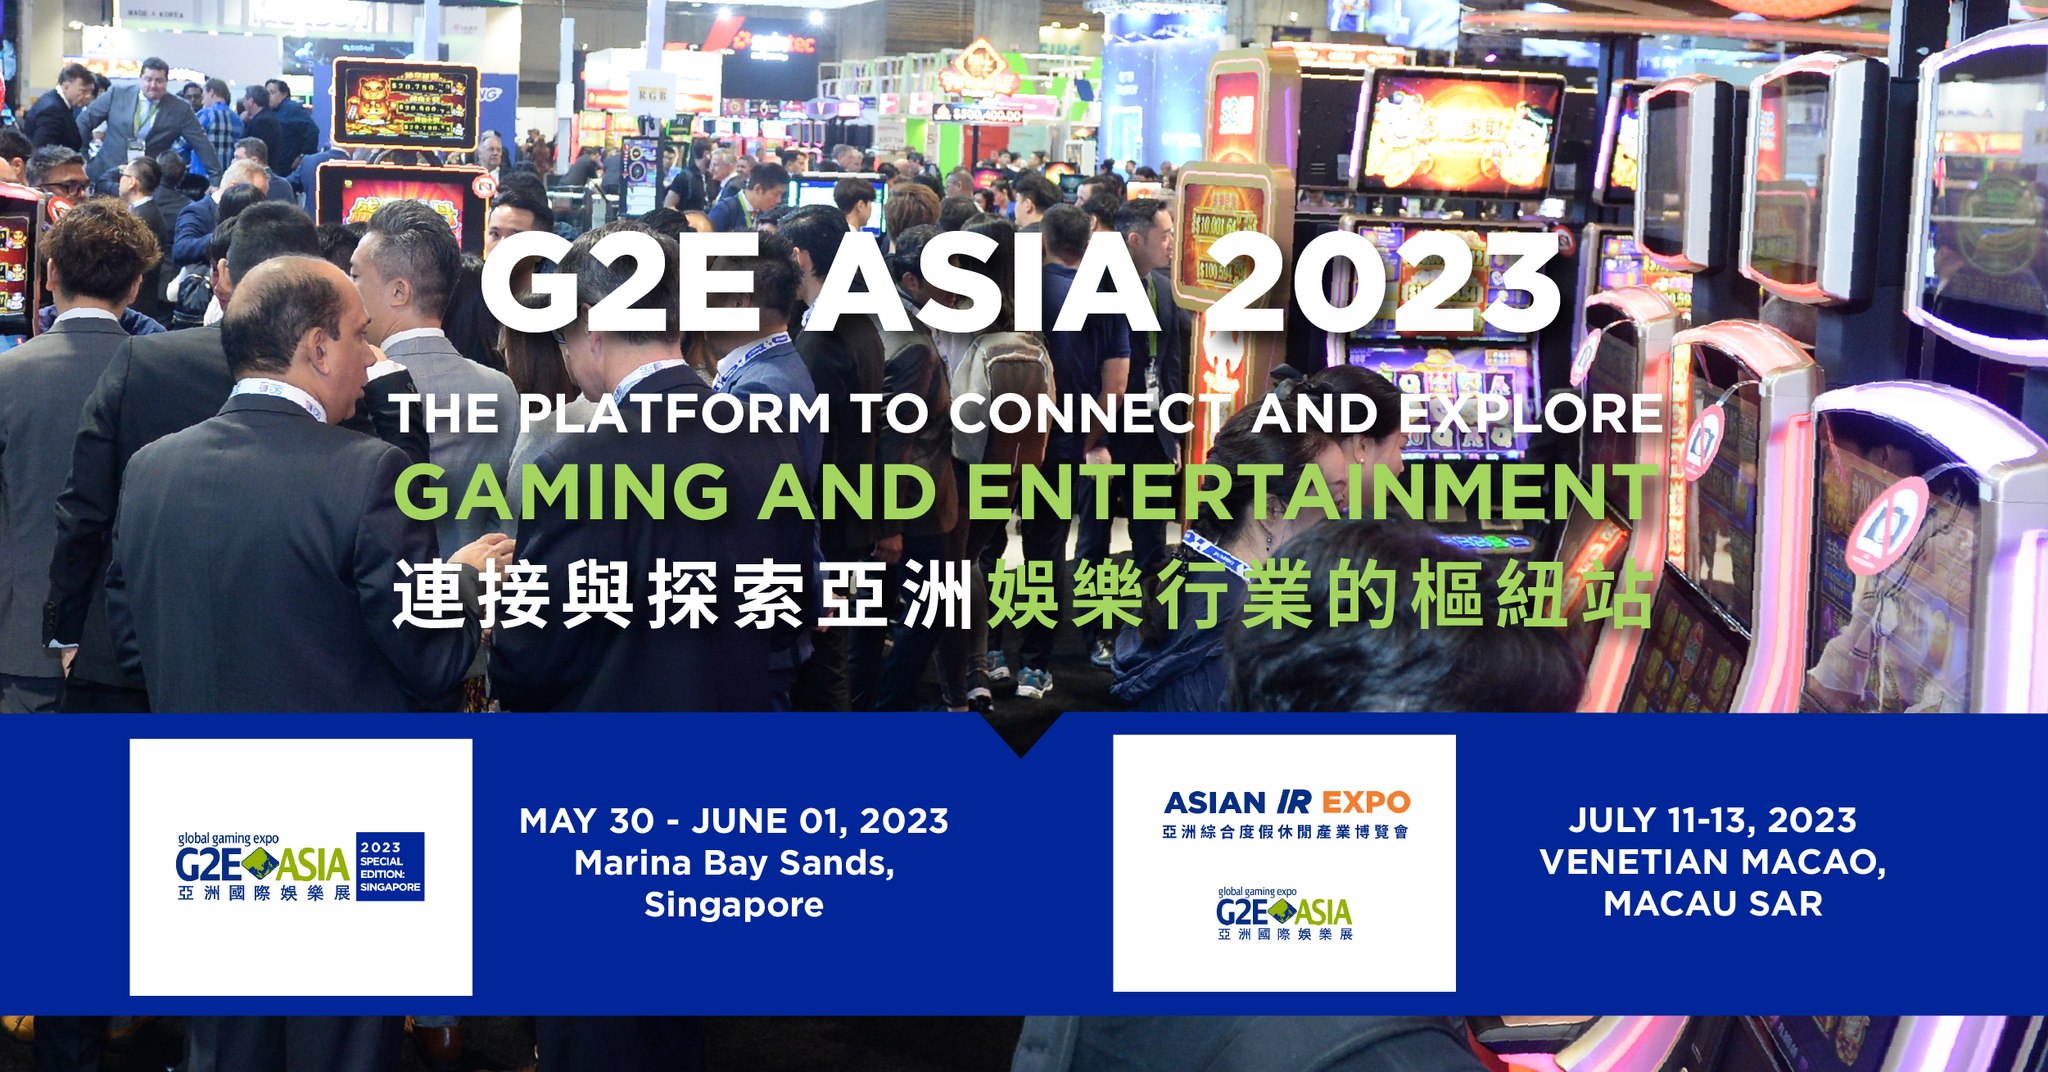 G2E Asia 2023, Singapore